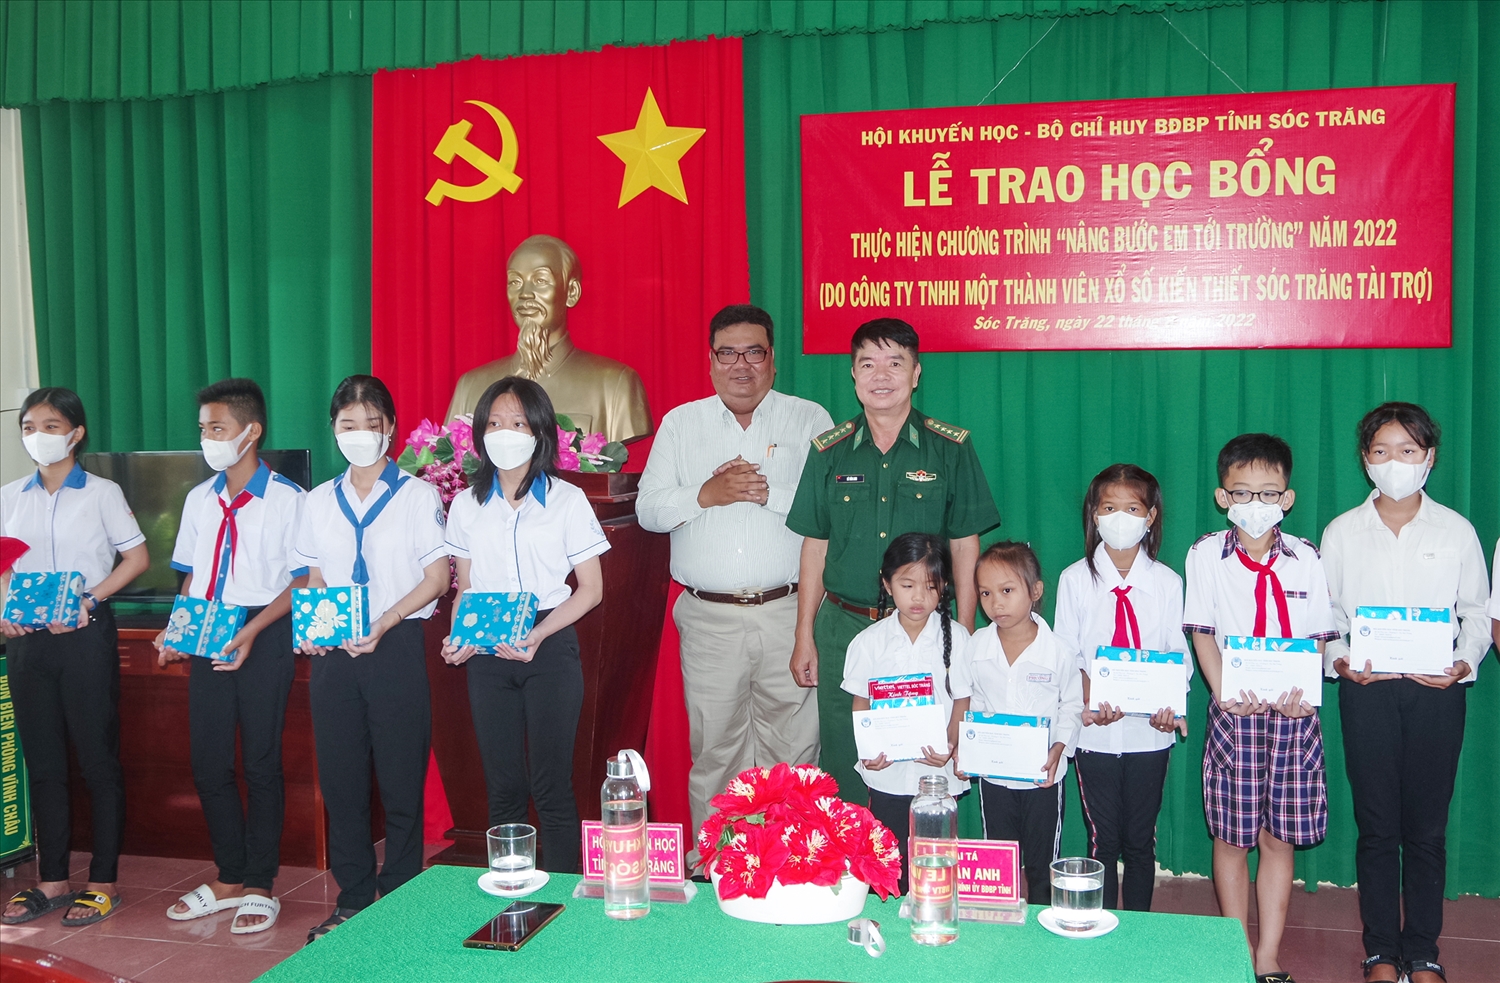 Đại diện lãnh đạo BĐBP tỉnh và Hội Khuyến học tỉnh Sóc Trăng trao học bổng cho các em học sinh